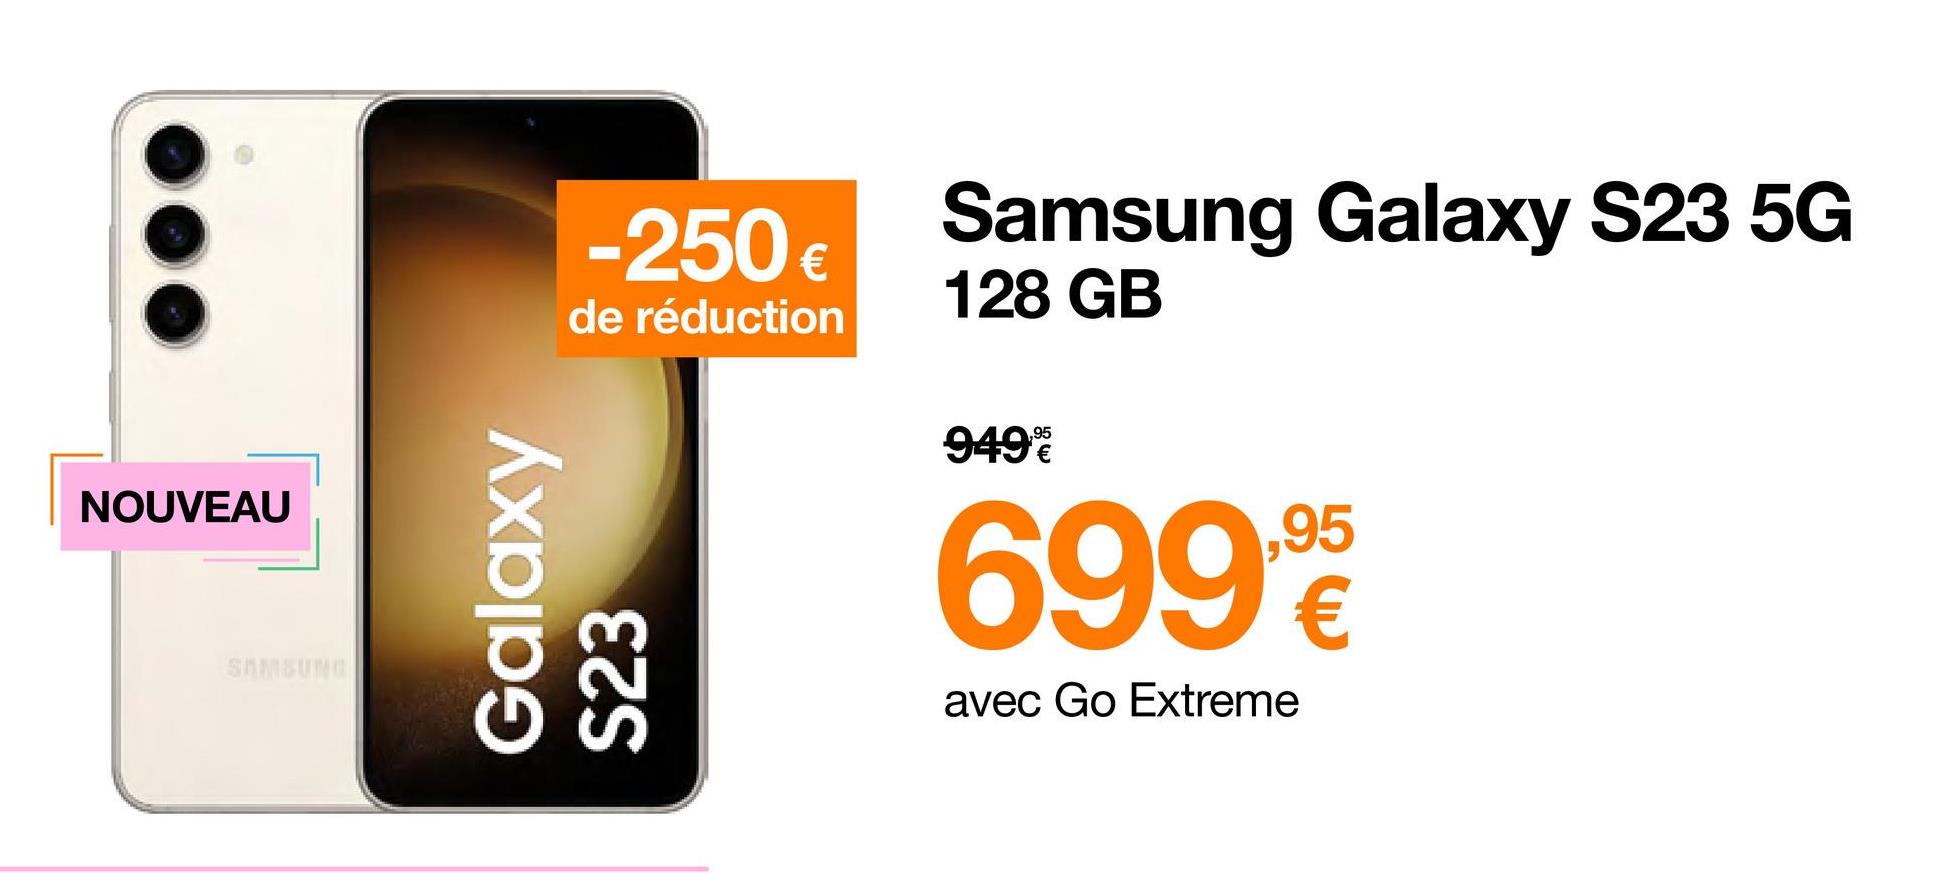 NOUVEAU
SAMSUNG
-250 €
de réduction
Galaxy
S23
Samsung Galaxy S23 5G
128 GB
949%
699.95
€
avec Go Extreme